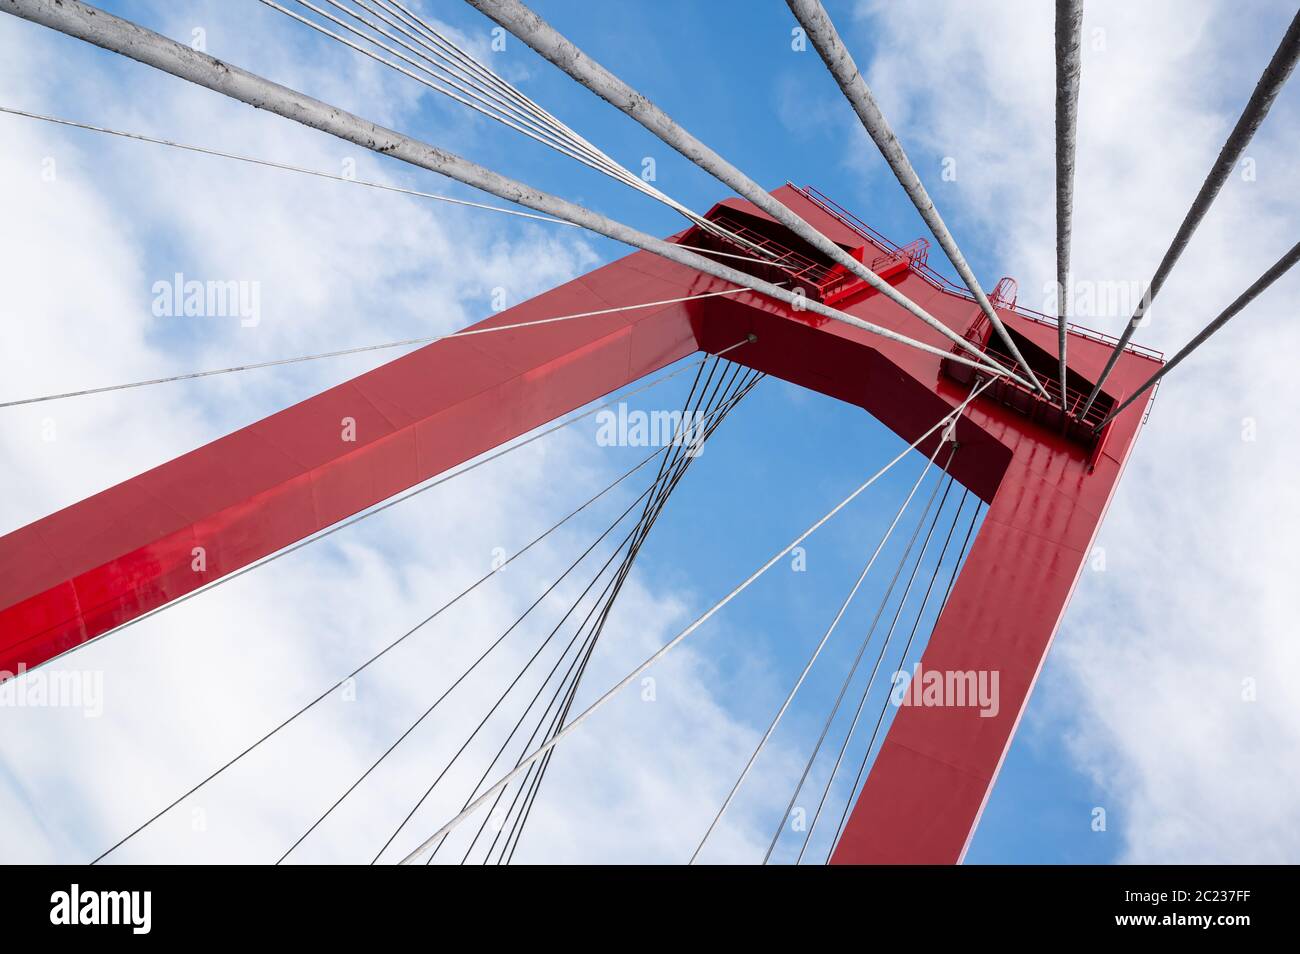 Willemsbrug (pont Willems) est un pont suspendu moderne qui traverse les Maas Nieuwe à Rotterdam, aux pays-Bas Banque D'Images